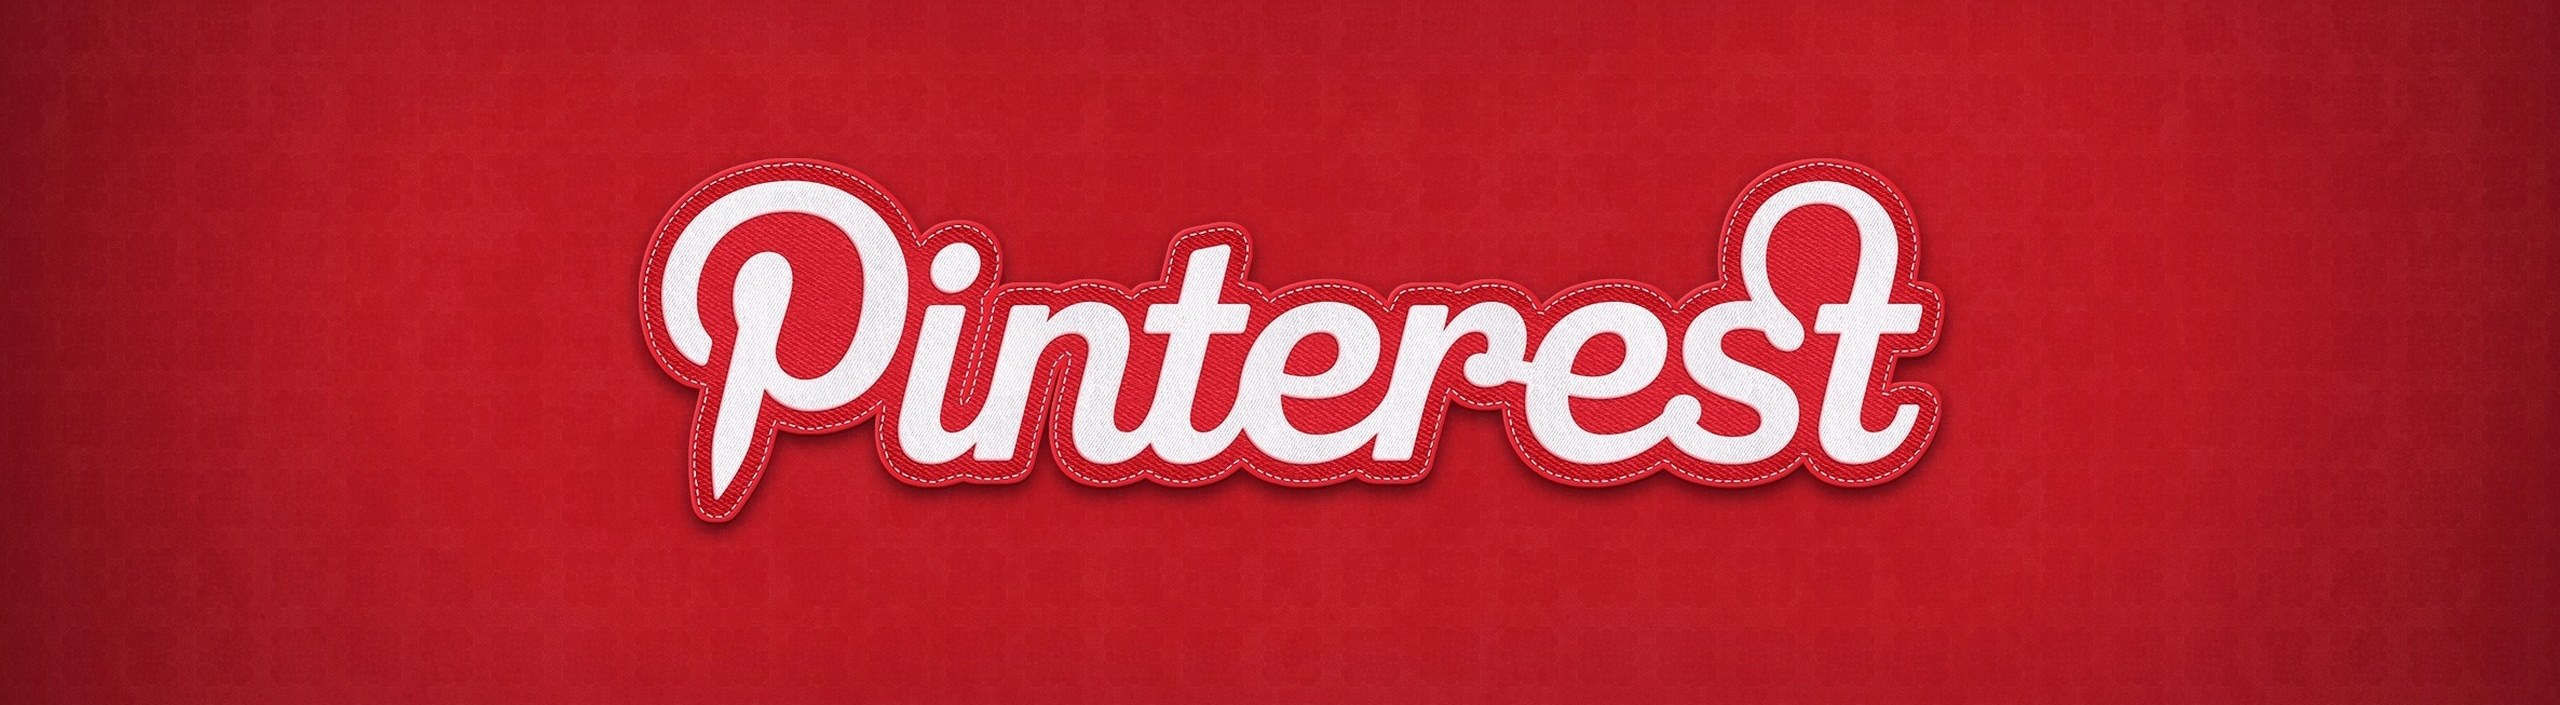 Pinterest intègre le Web Analytics (comptes pro)